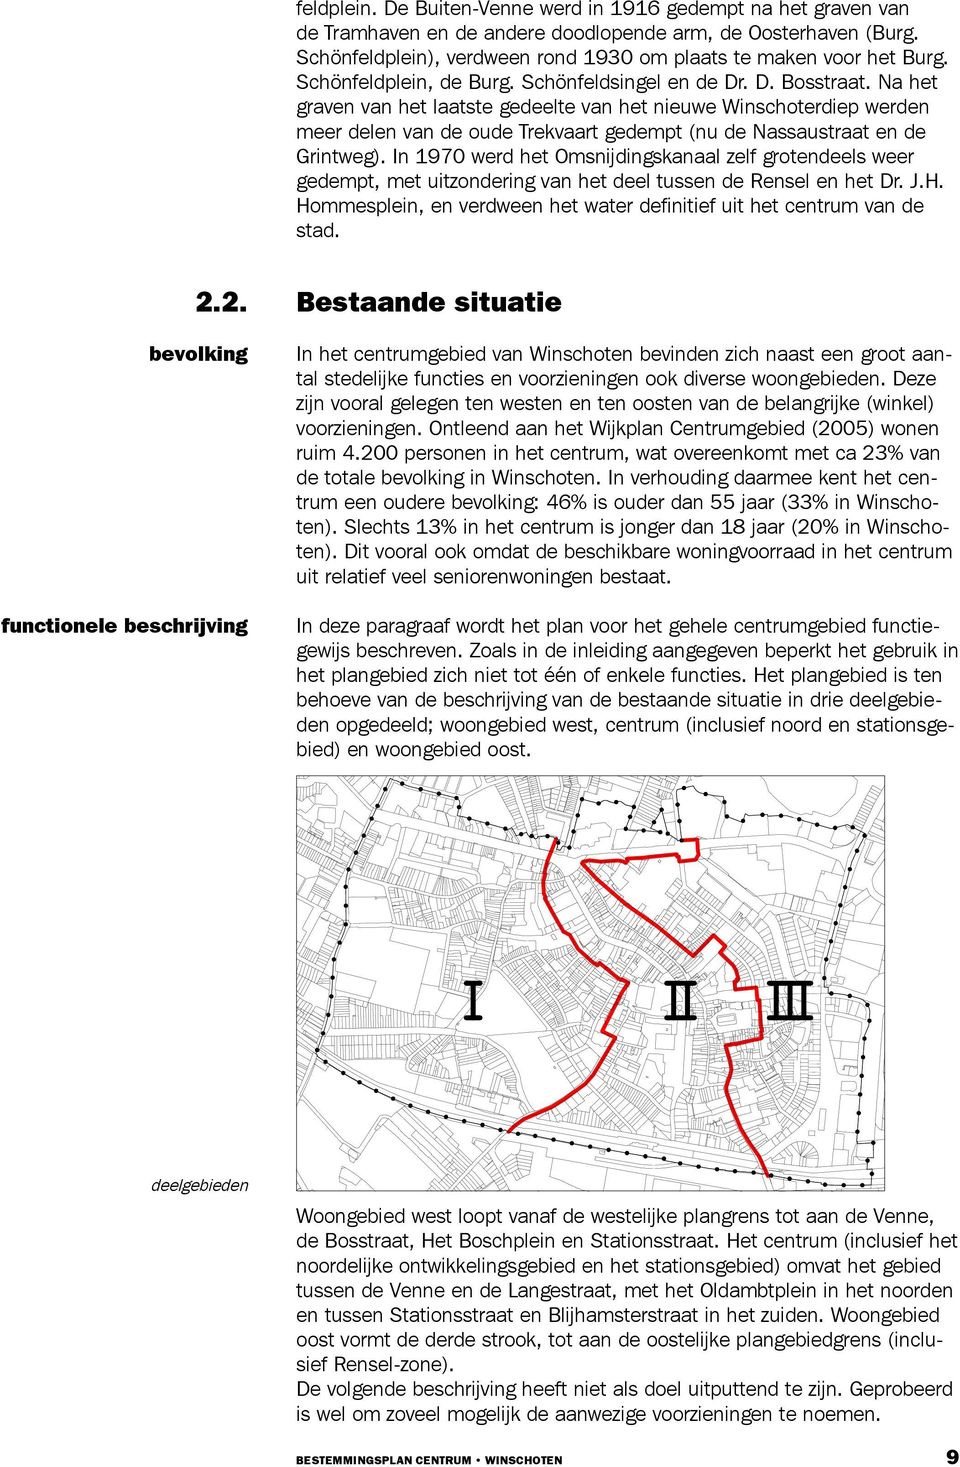 Na het graven van het laatste gedeelte van het nieuwe Winschoterdiep werden meer delen van de oude Trekvaart gedempt (nu de Nassaustraat en de Grintweg).